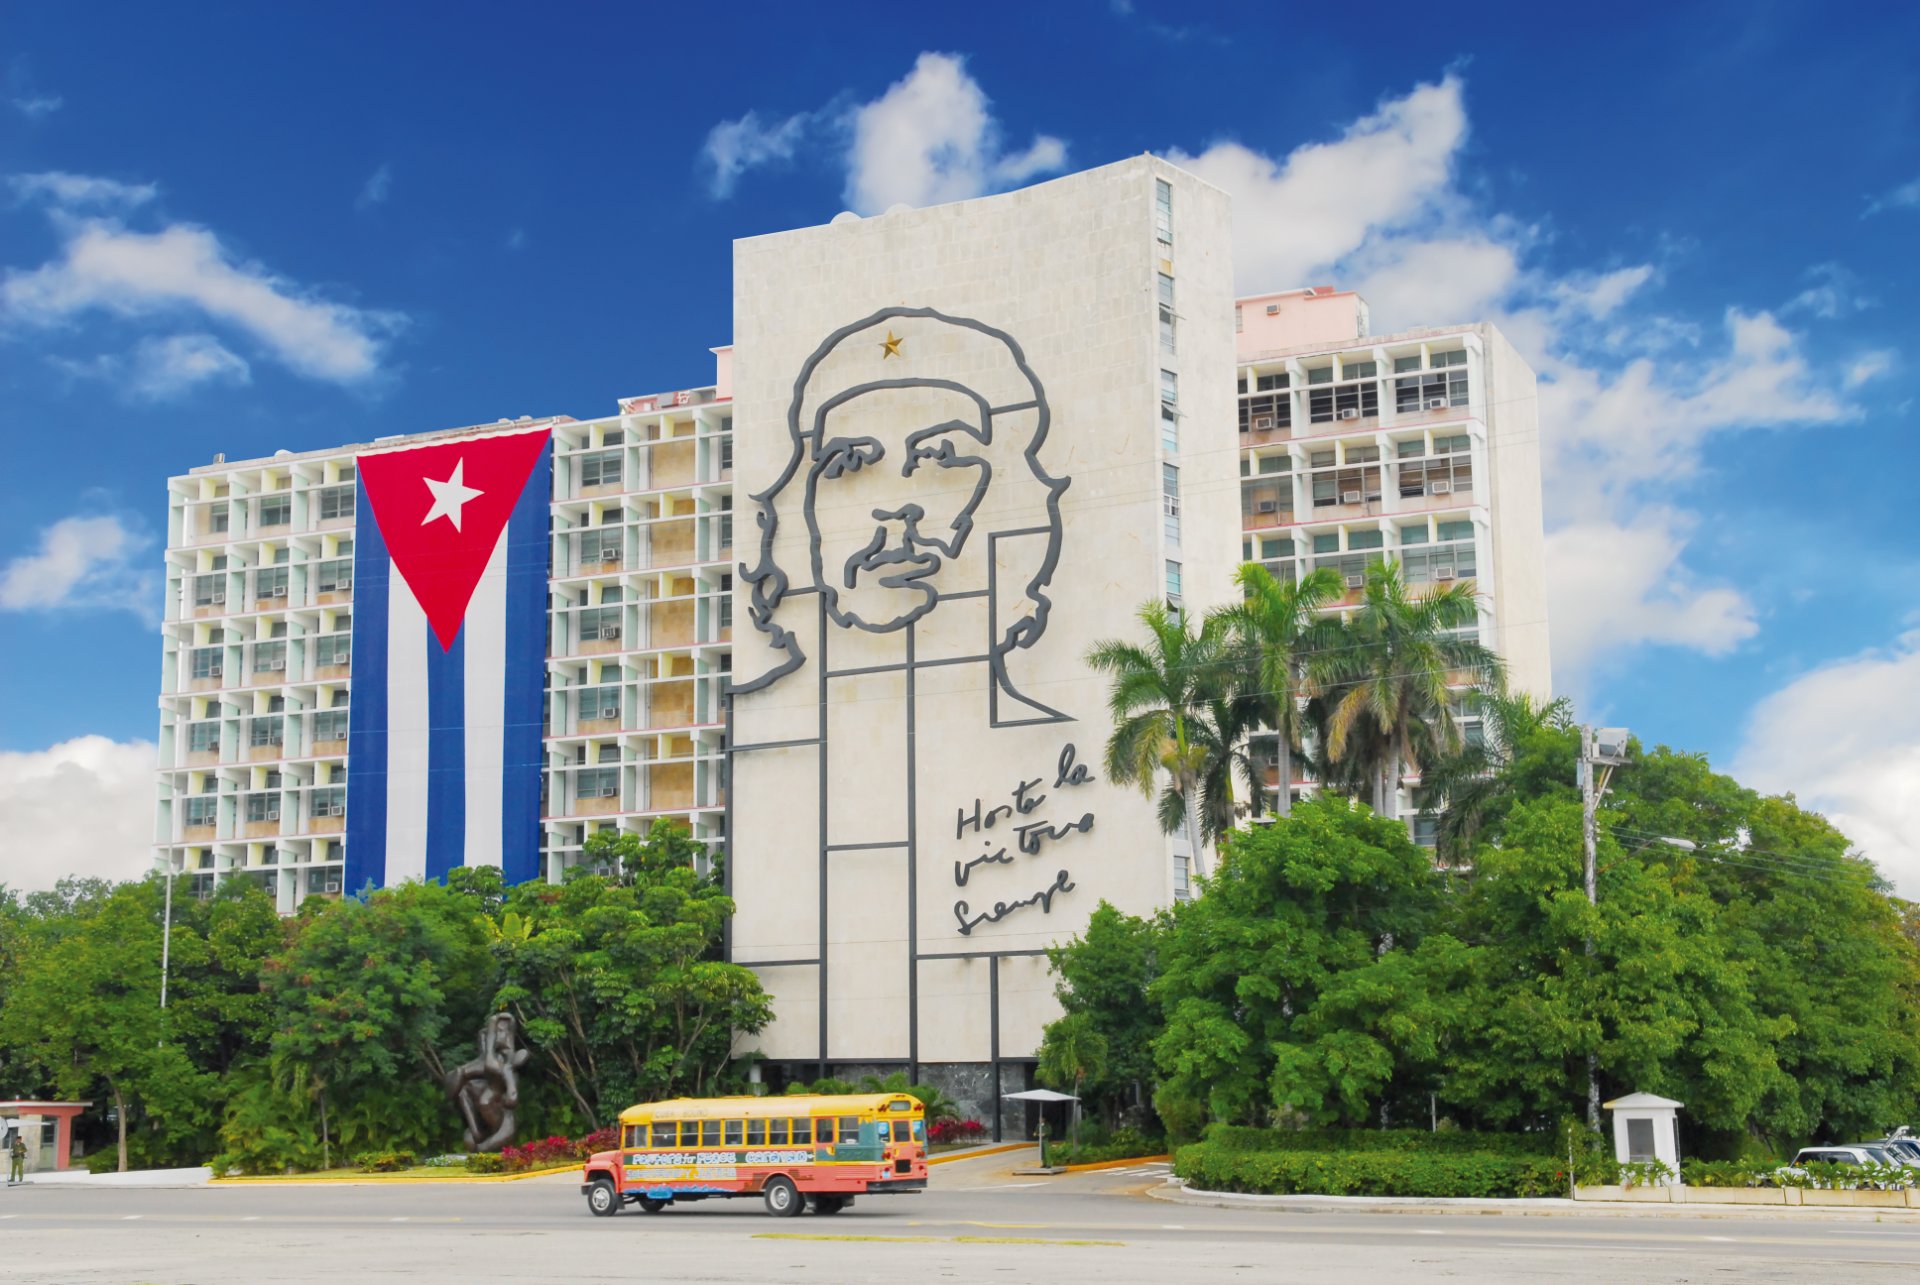 ¿Cómo moverse en Cuba? | Toda la información